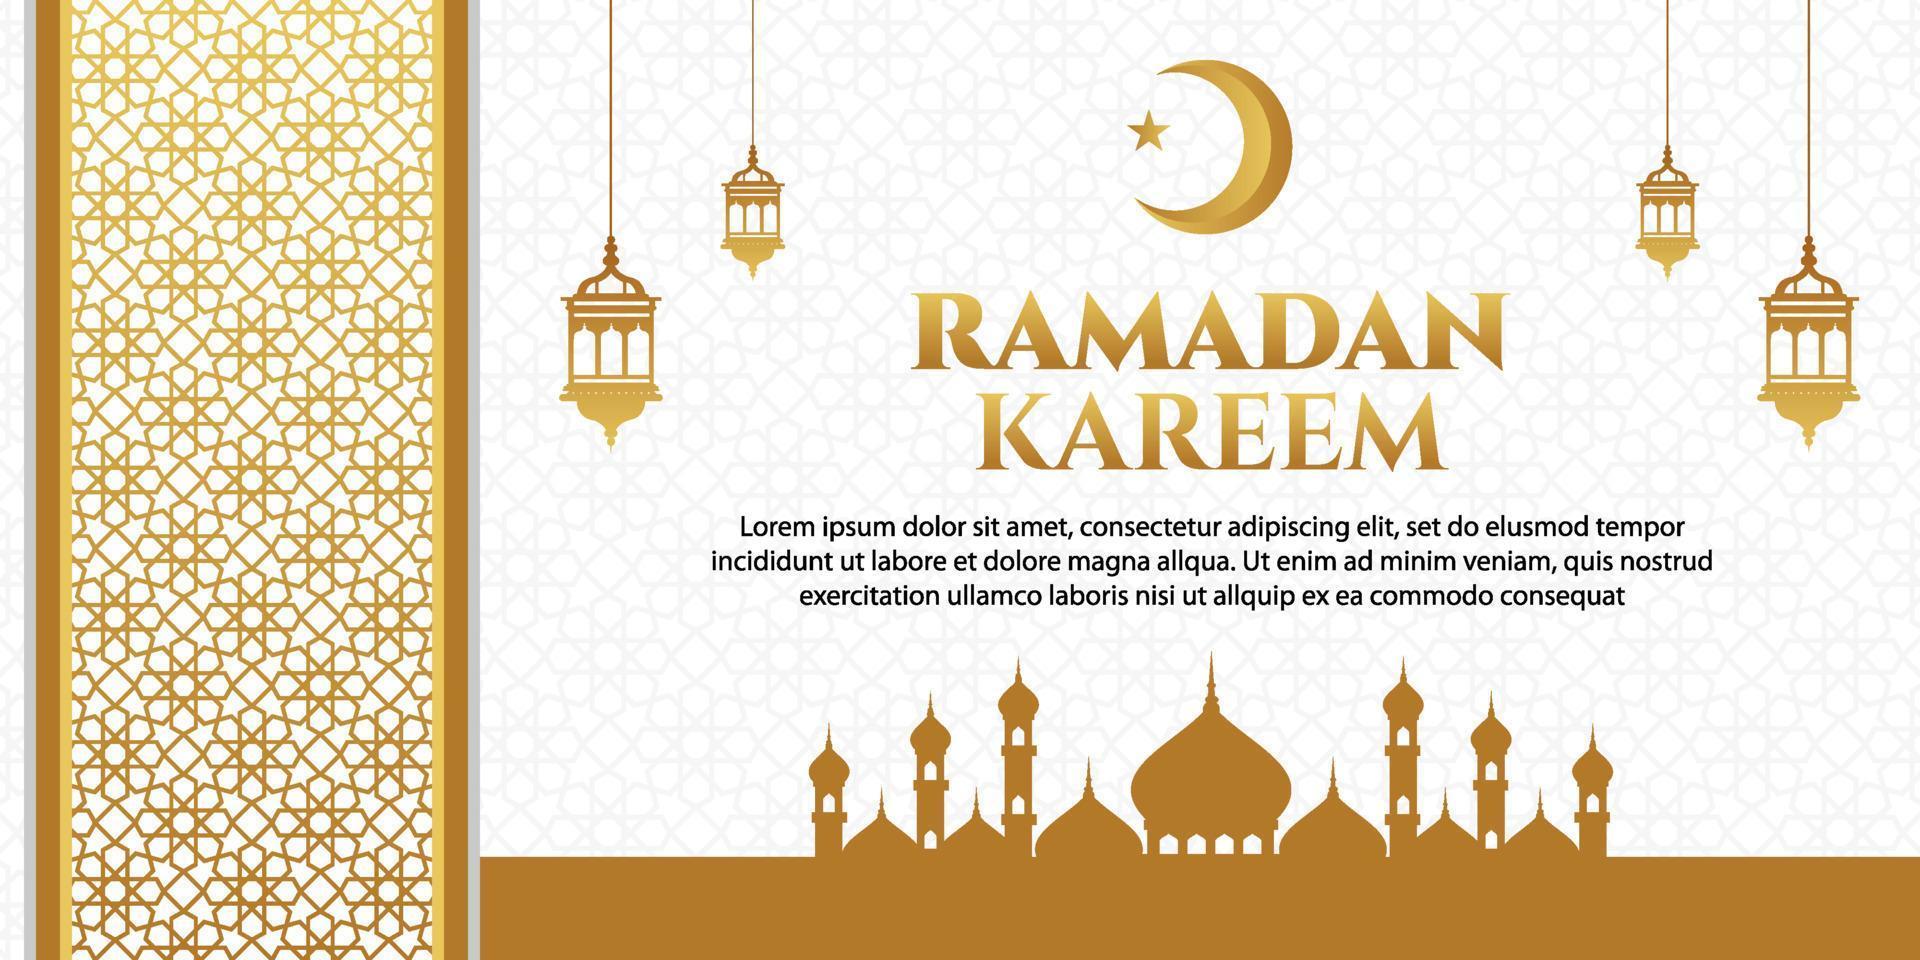 Ramadan Kareem Greeting With Mosque vector